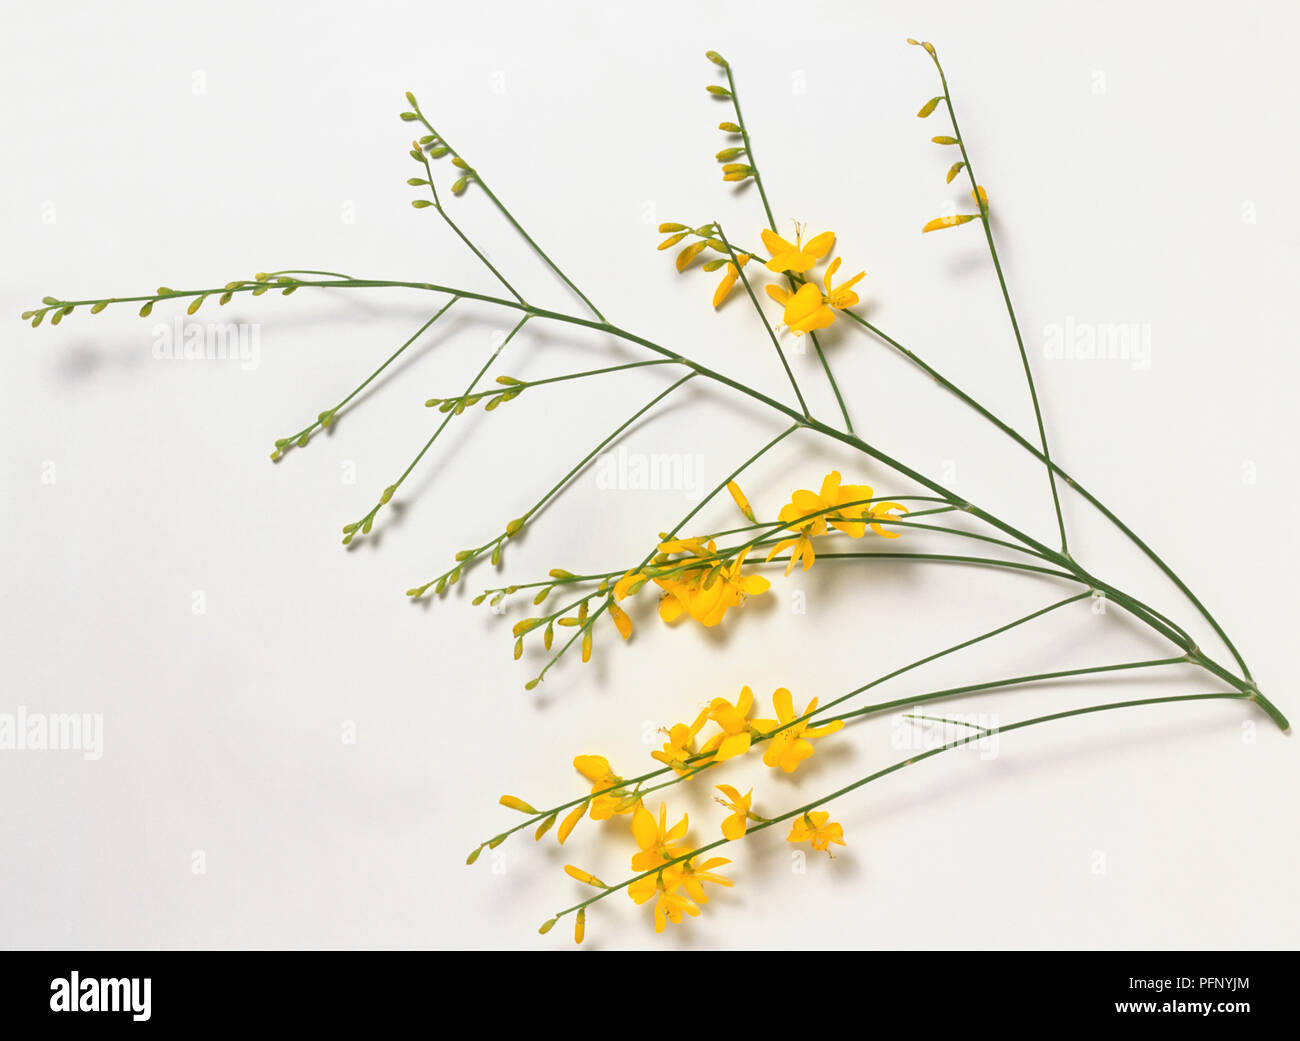 Leguminosae, Genista aetnensis, Mount Etna Broom, fragrant golden flowers borne on slender, leafless shoots. Stock Photo